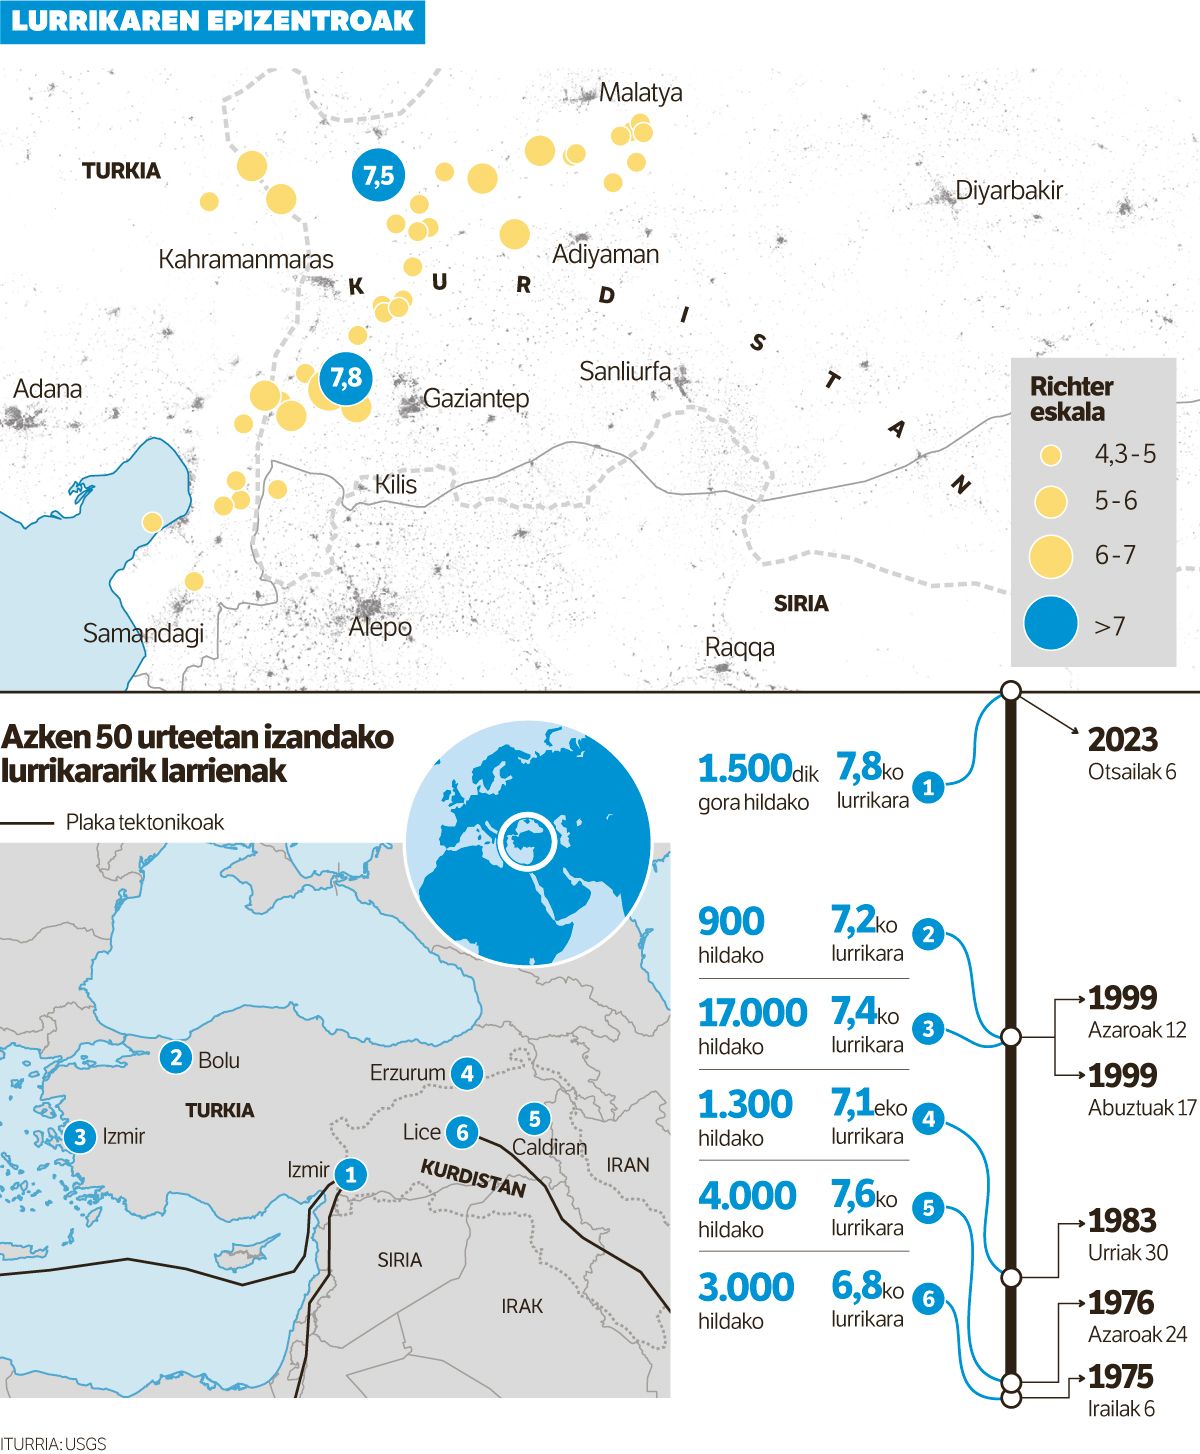 Bi lurrikarak 3.600 lagun hil dituzte Kurdistanen, Turkian eta Sirian.